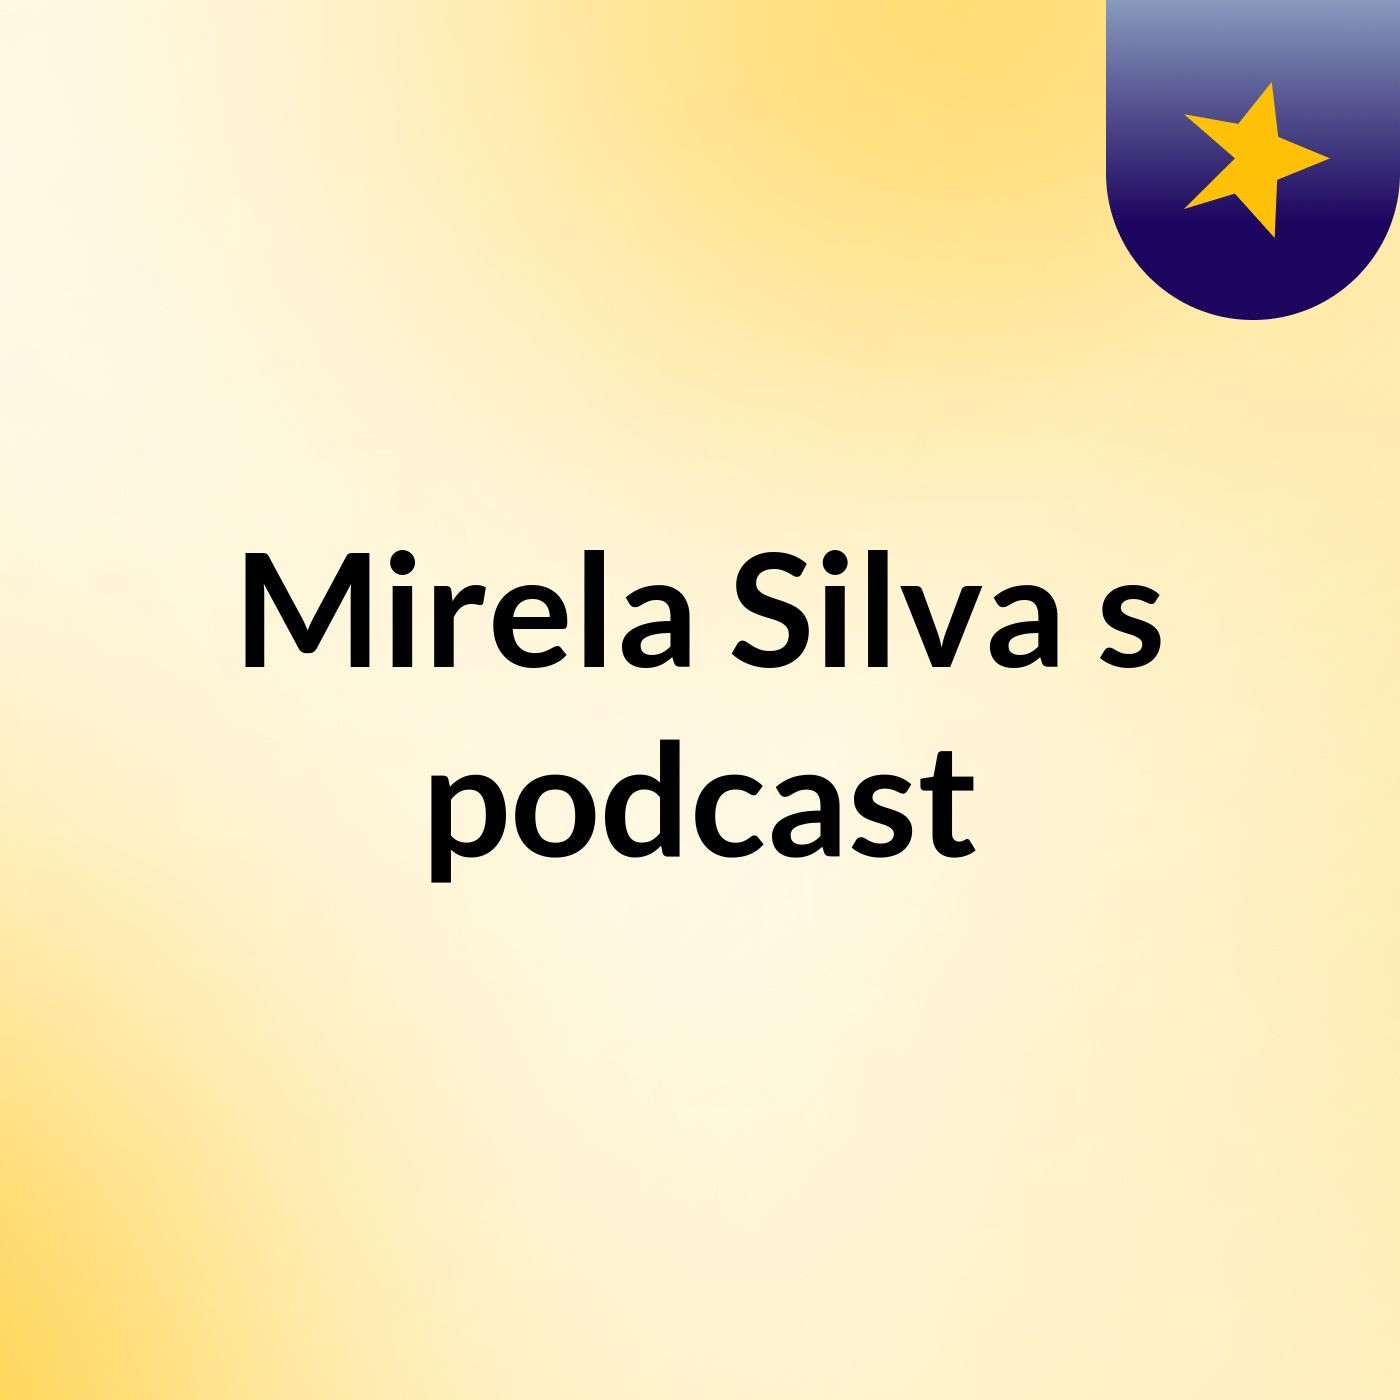 Mirela Silva's podcast